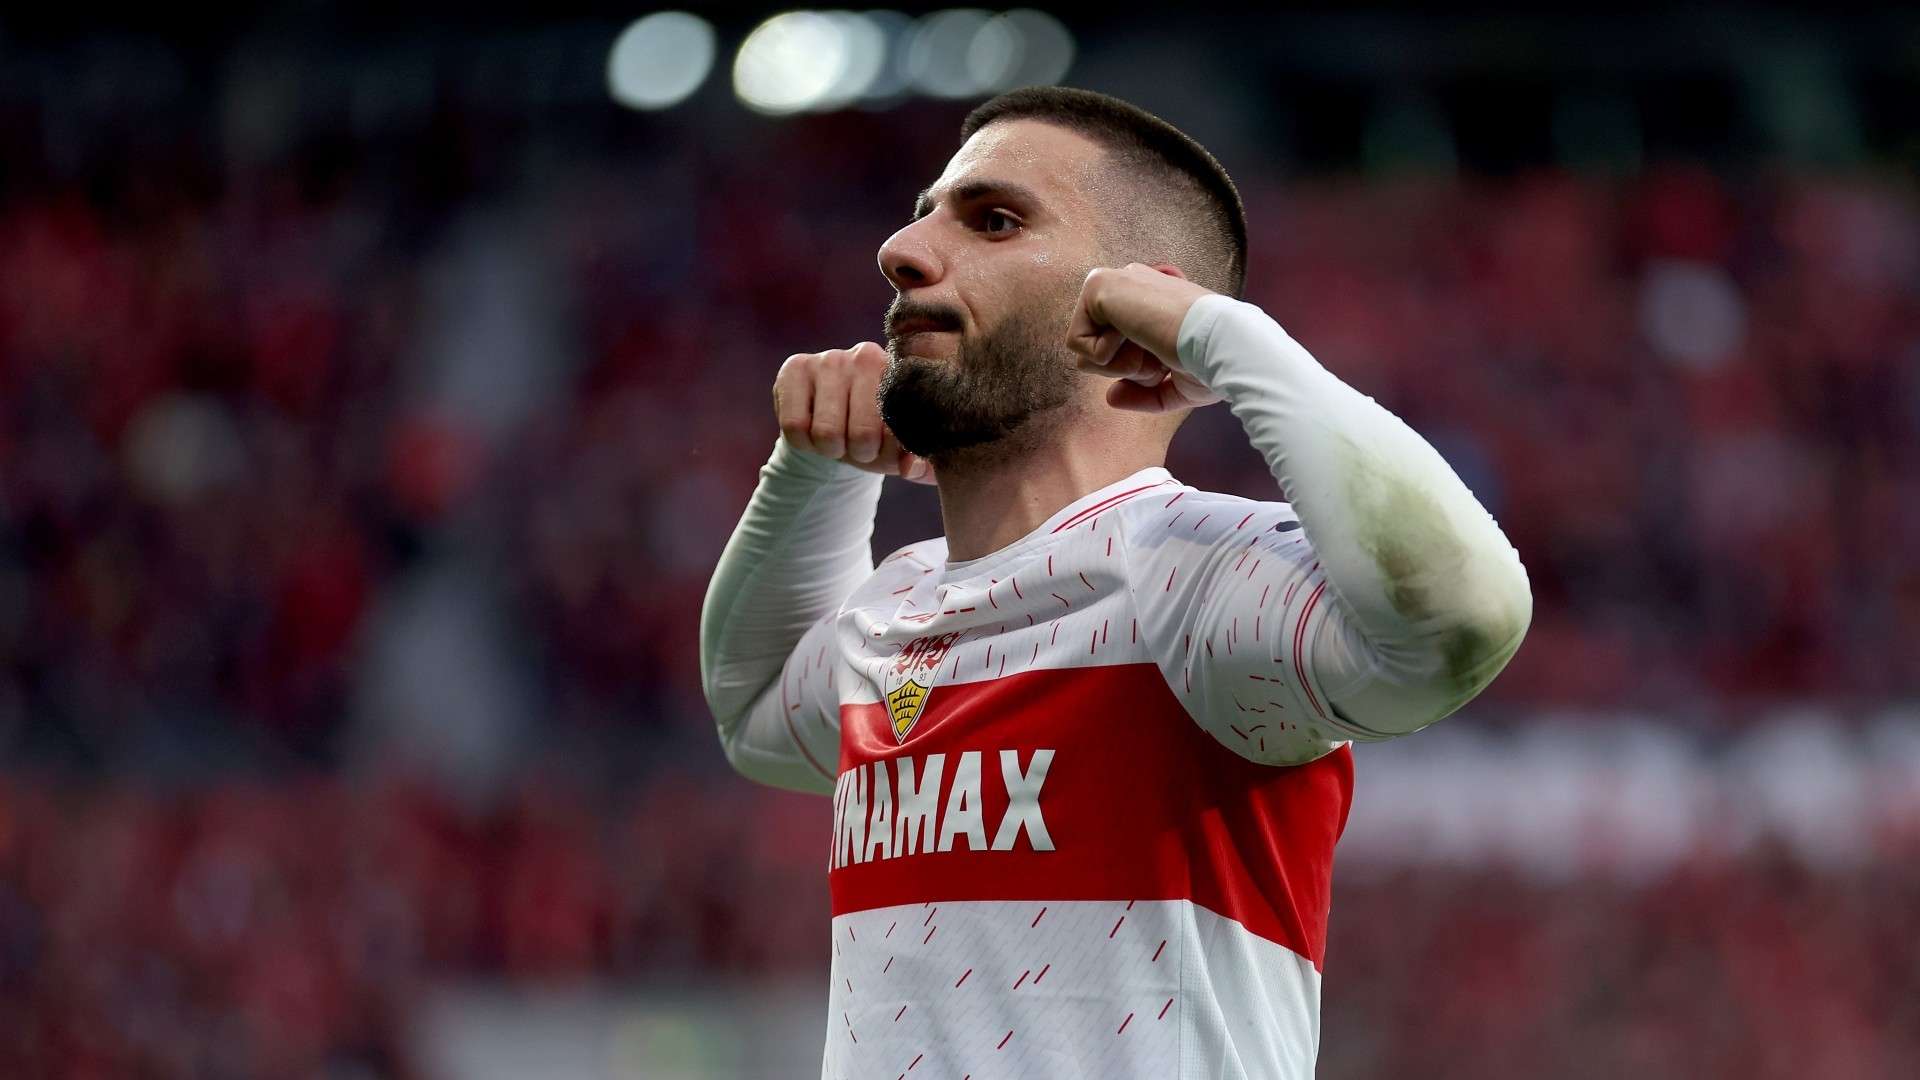 Deniz Undav of VfB Stuttgart celebrates